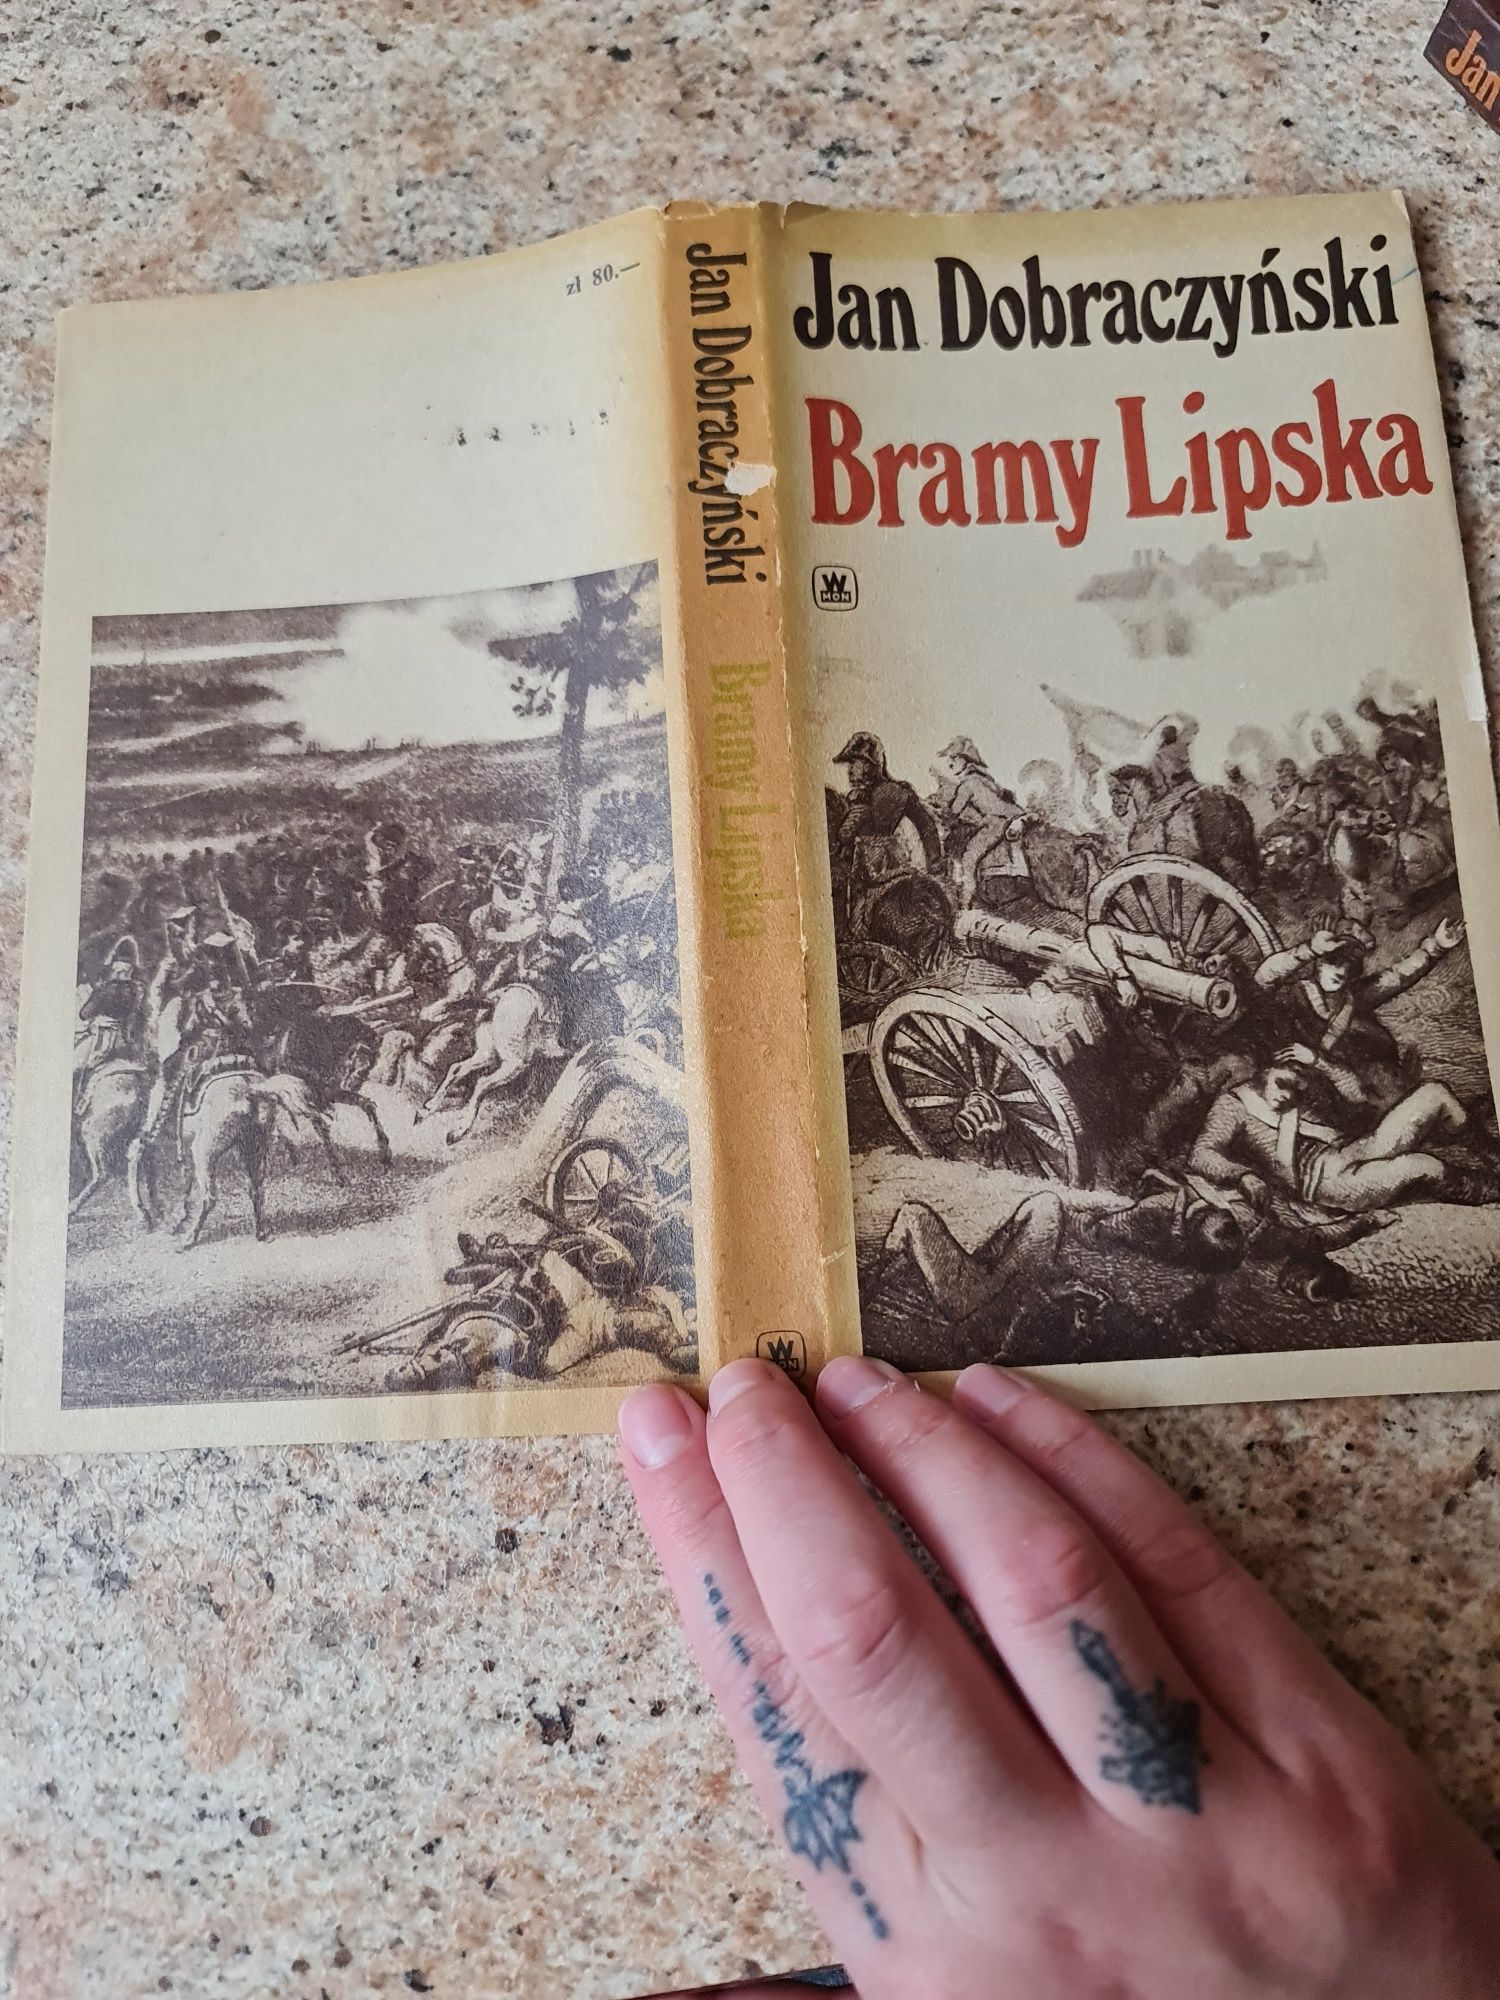 Sprzedam książkę autora Jan Dobraczyński "Bramy Lipska"